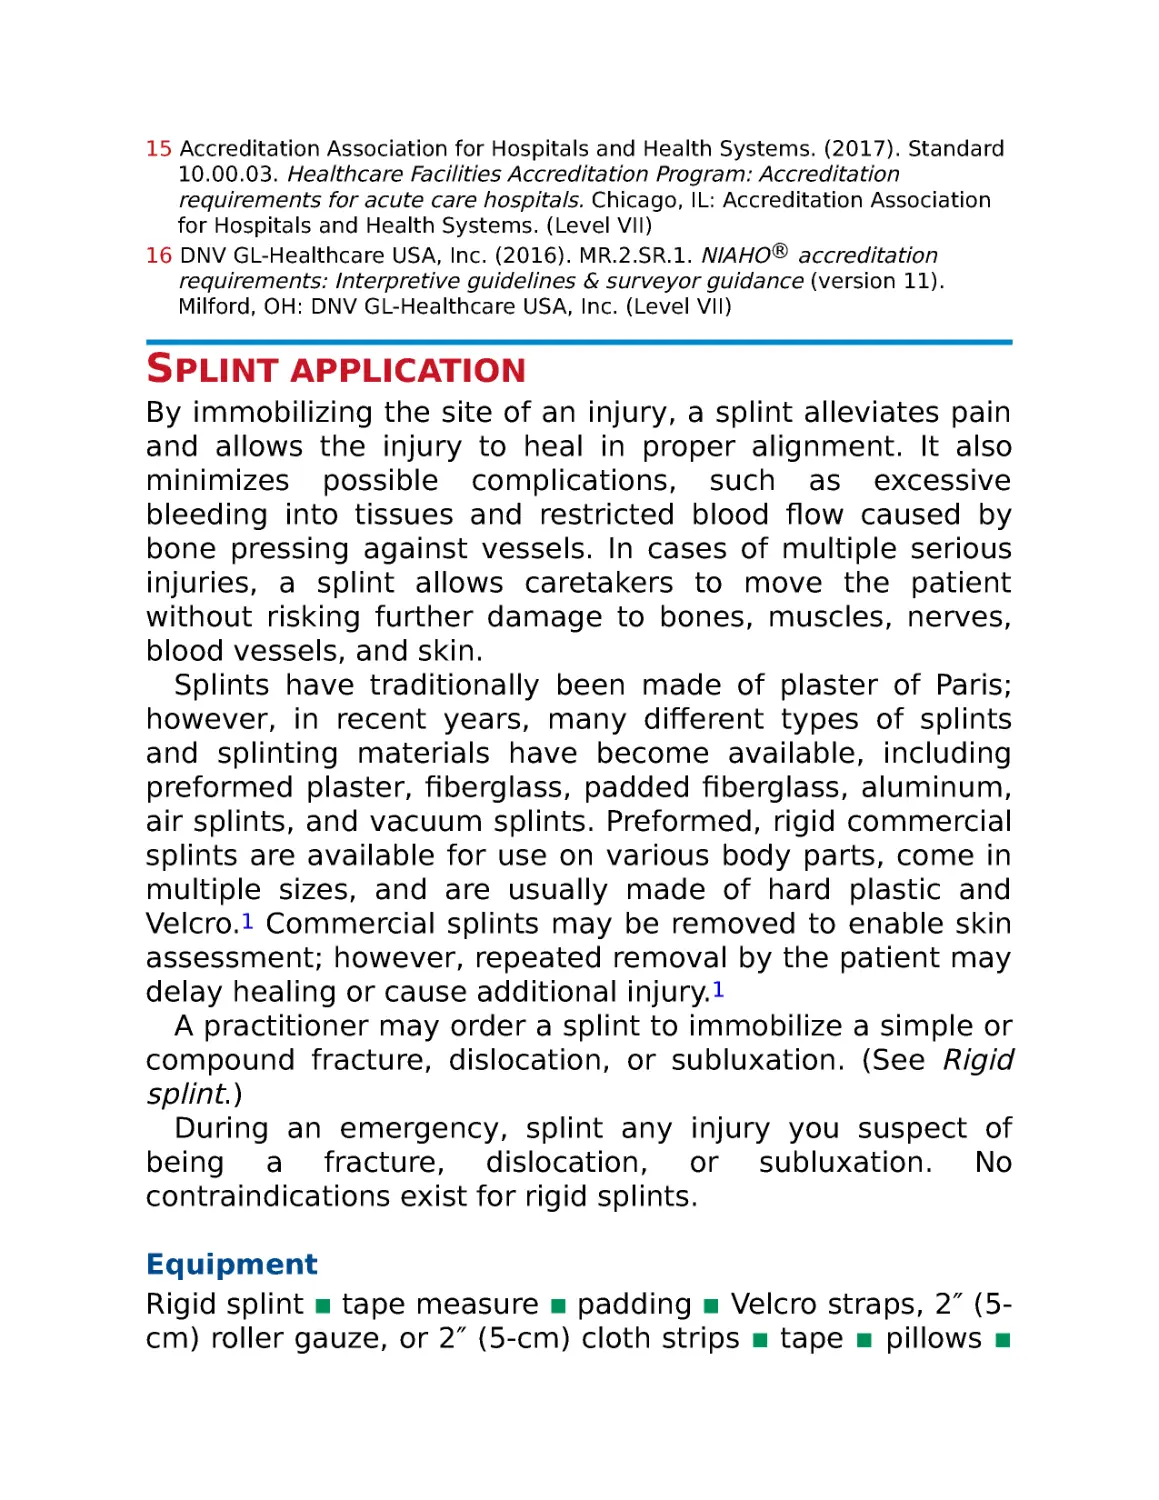 Splint application